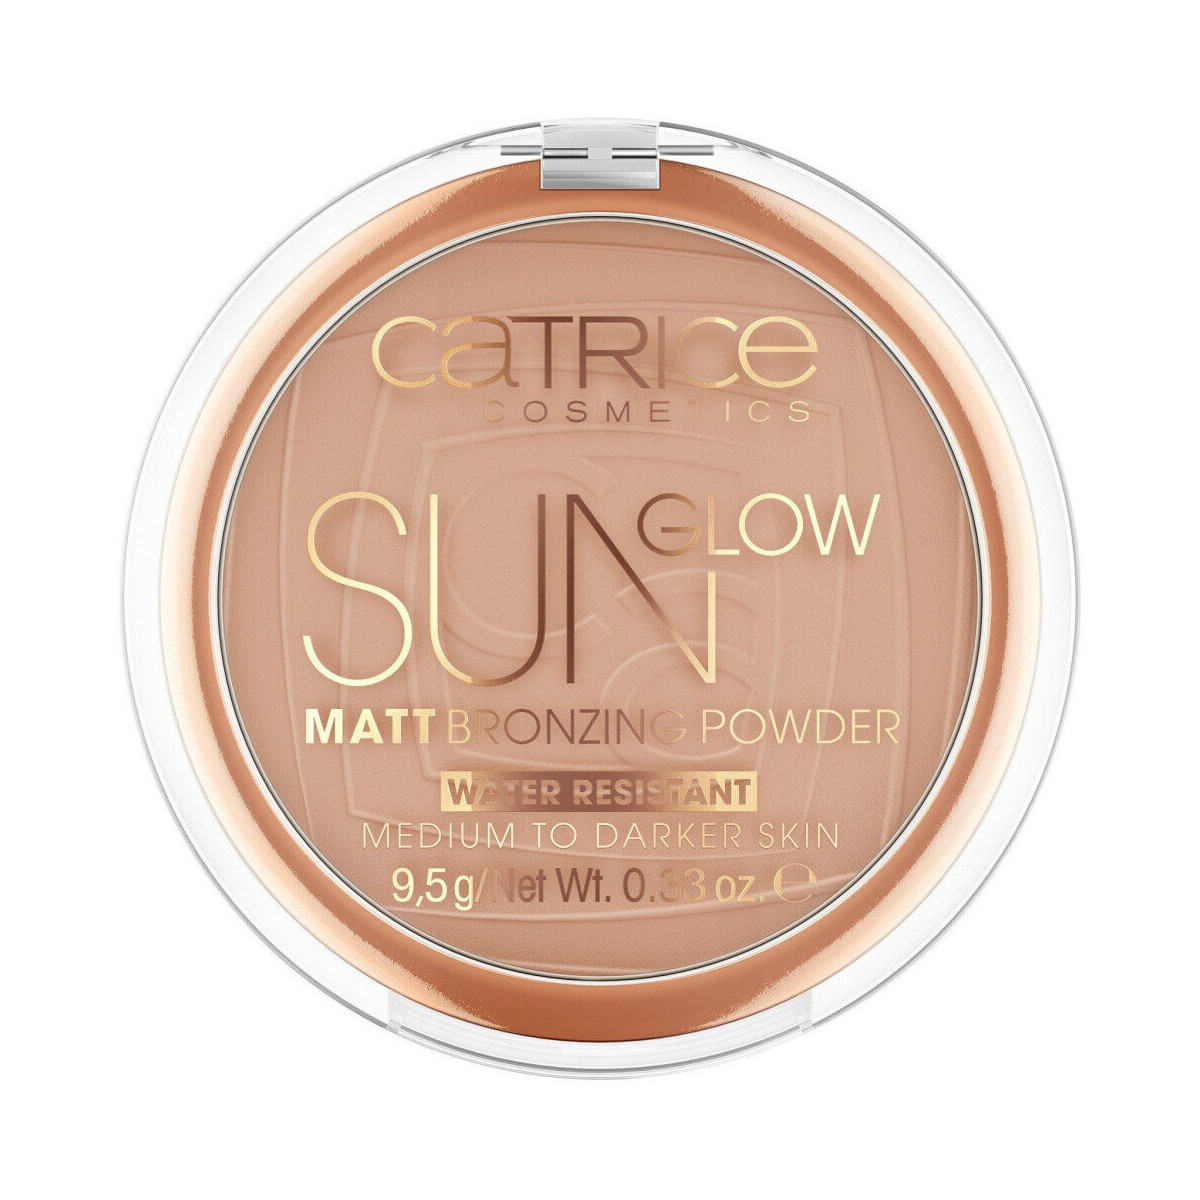 Beauté Femme Blush & poudres Catrice Poudre Bronzante Sun Glow Matt Marron